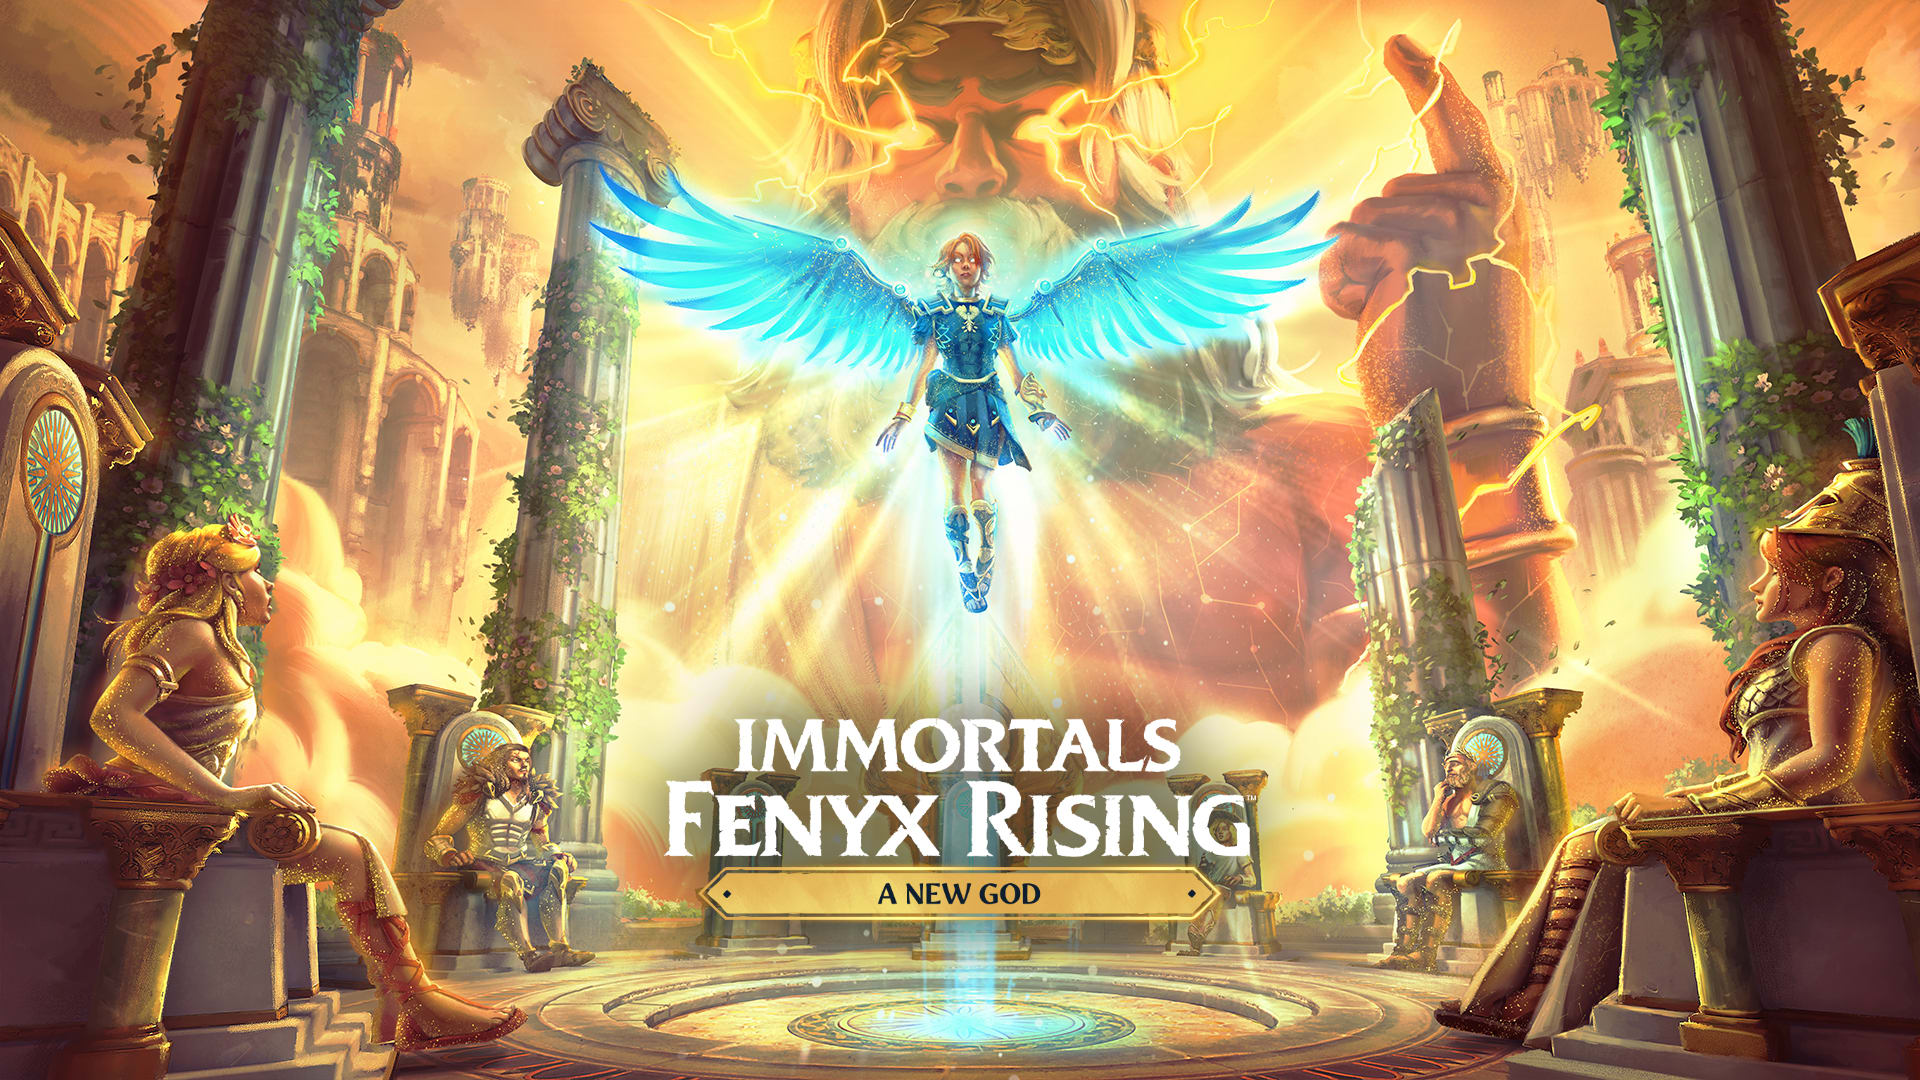 IMMORTALS FENYX RISING - A New god